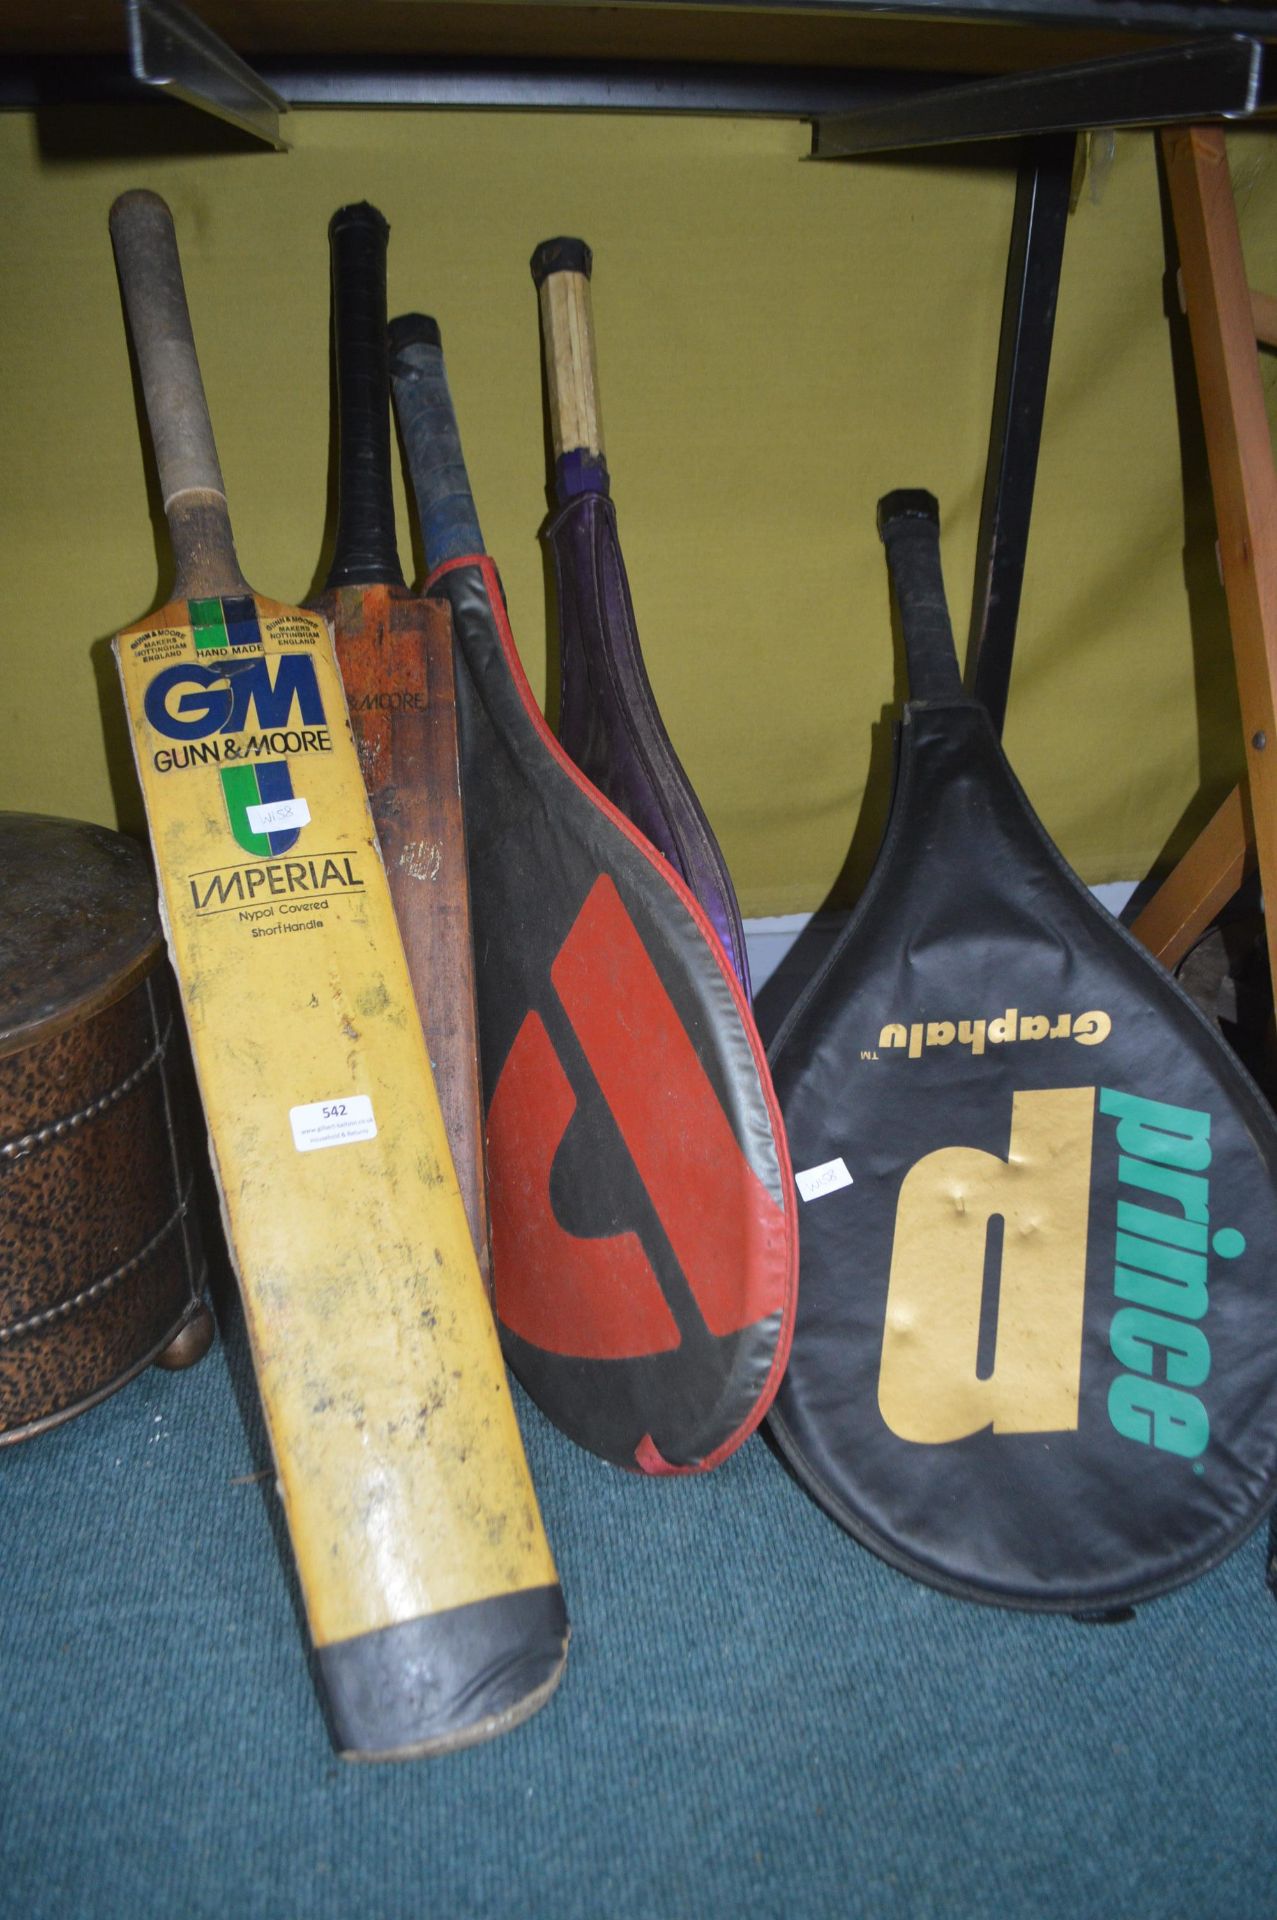 Cricket Bats and Tennis Rackets